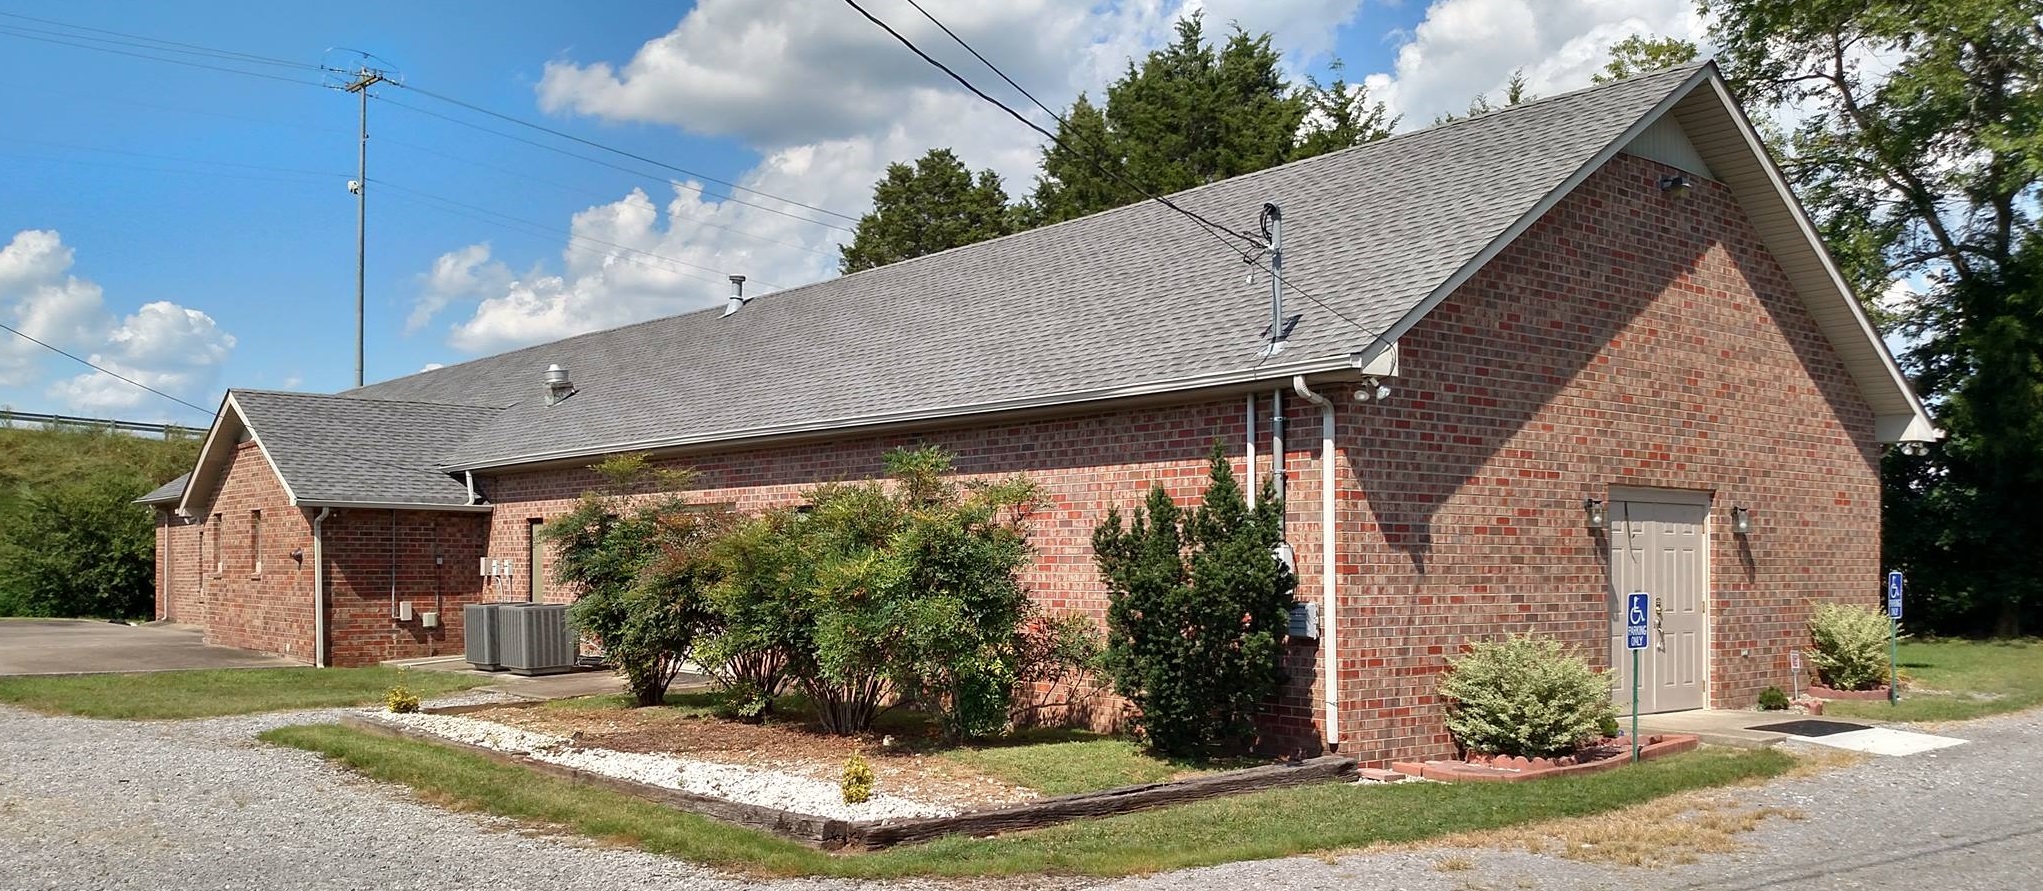 New Life Church of God | Murfreesboro, TN